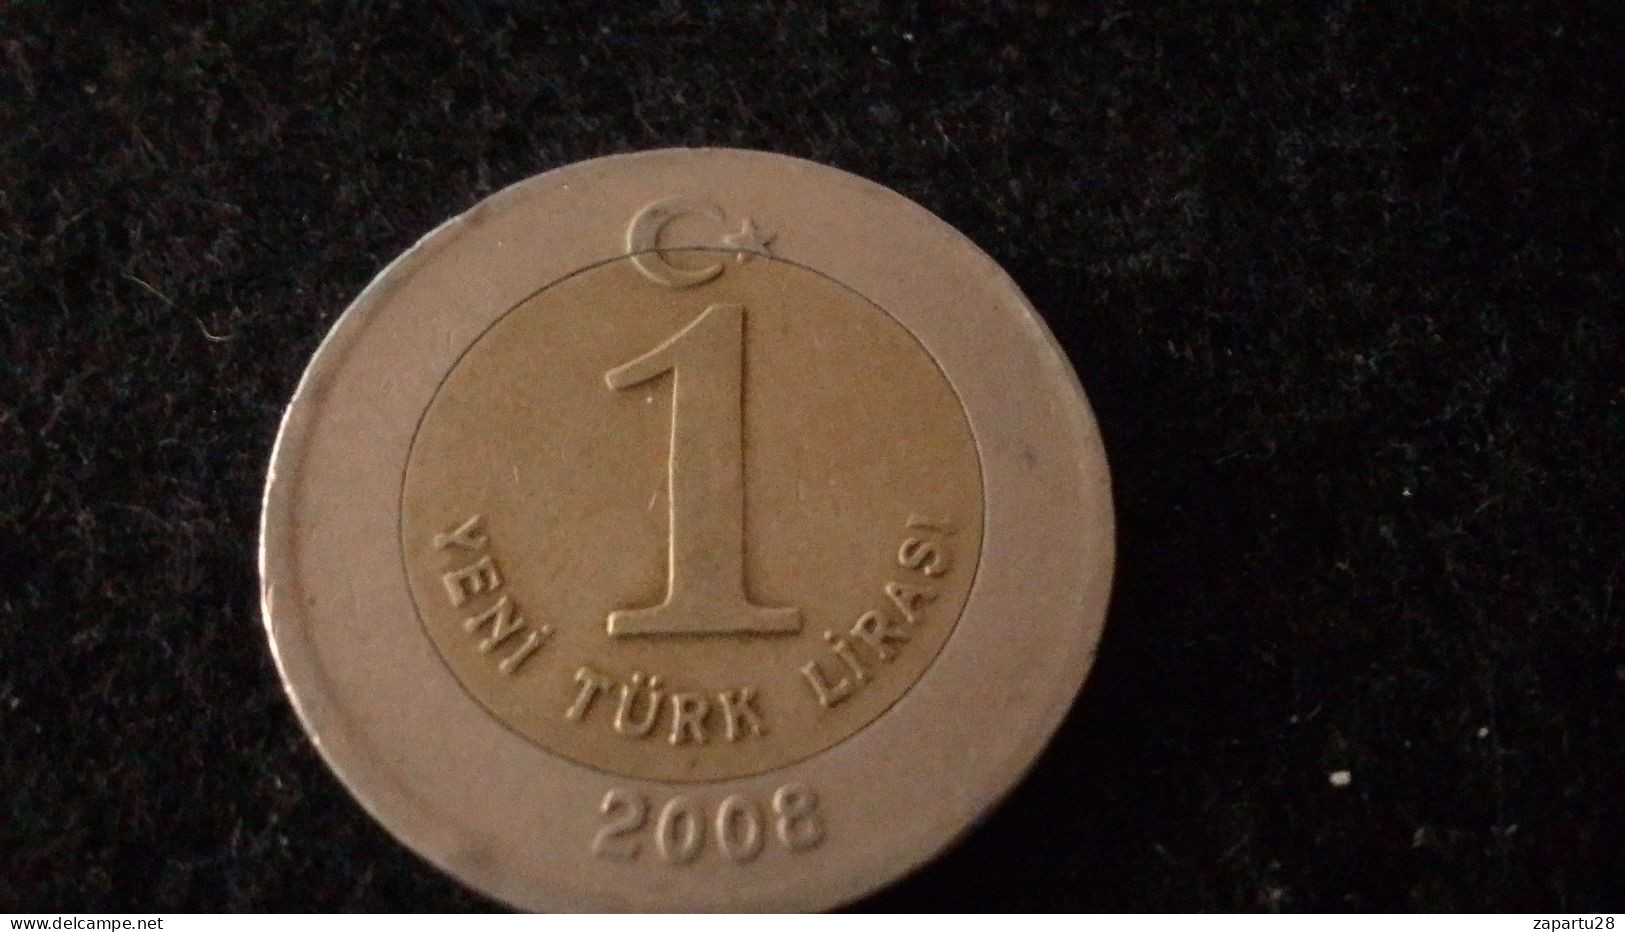 TÜRKİYE - 2008 - 1 YENİ TÜEK LİRASI - Türkei